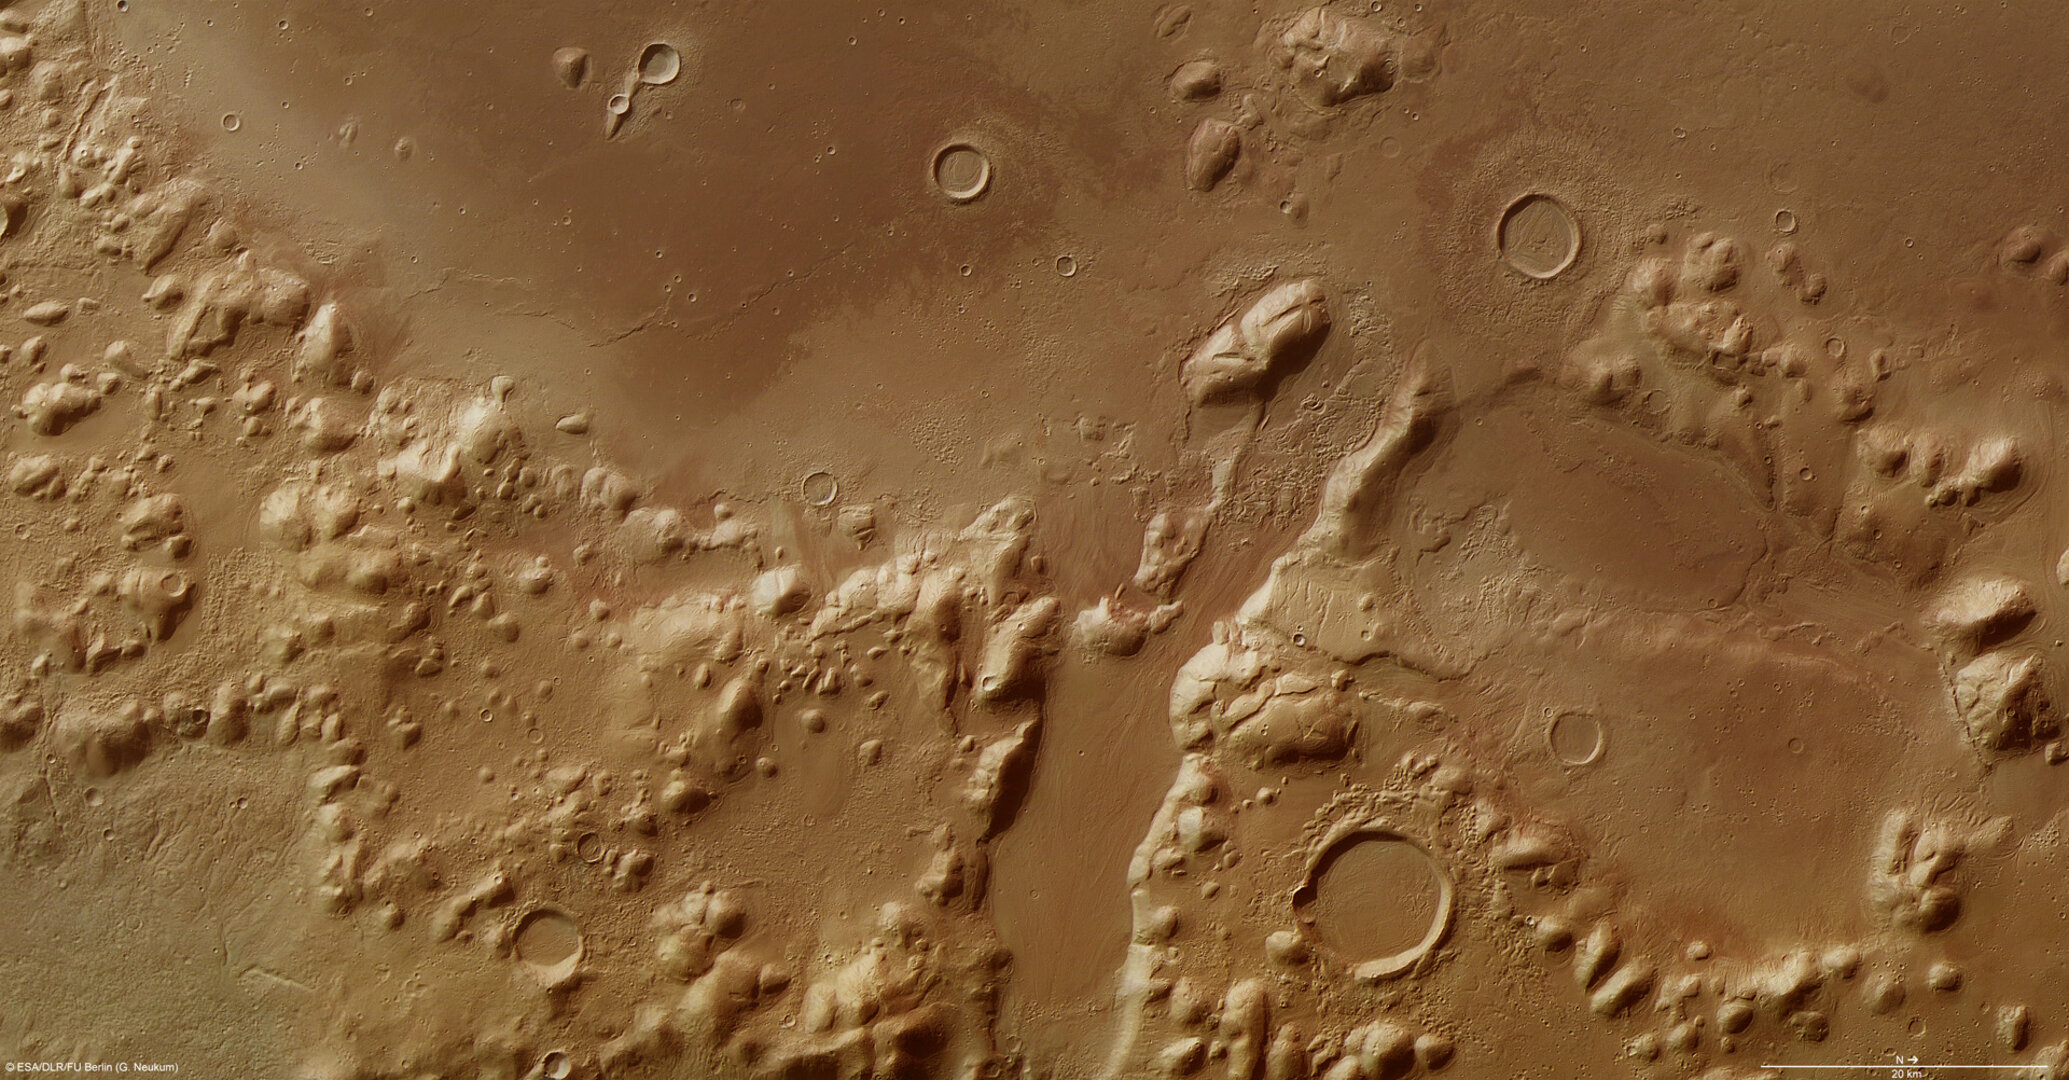 La cordillera Phlegra Montes en Marte